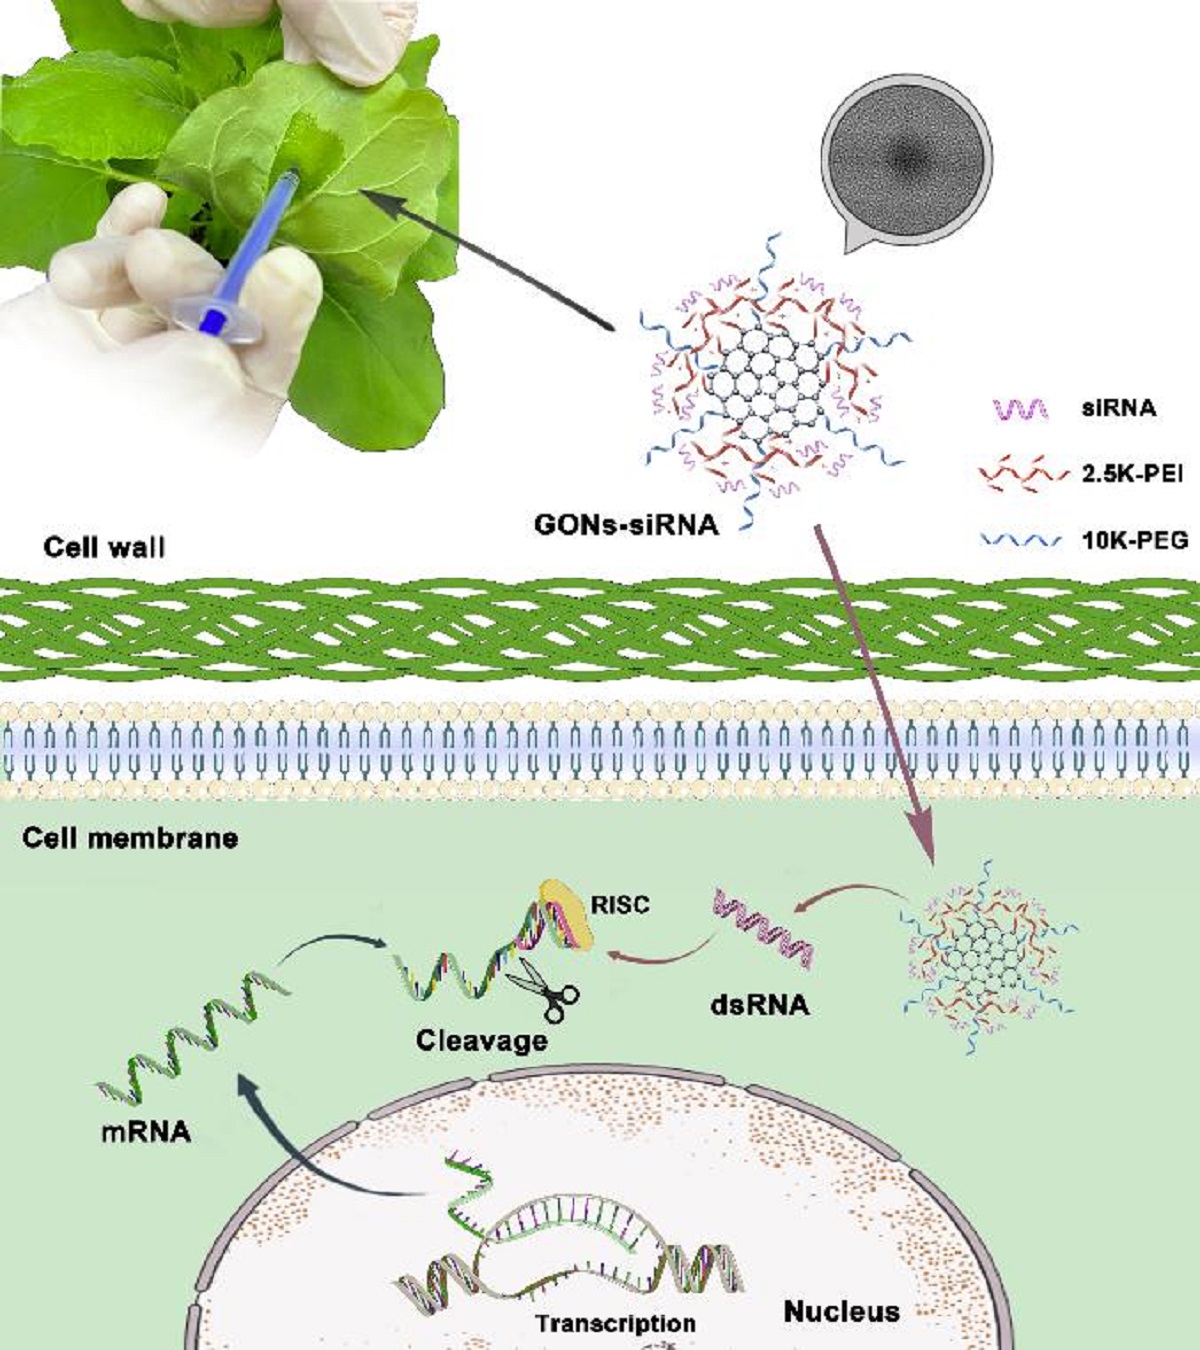 图1 GONs-siRNA在完整植物细胞中基因沉默的示意图